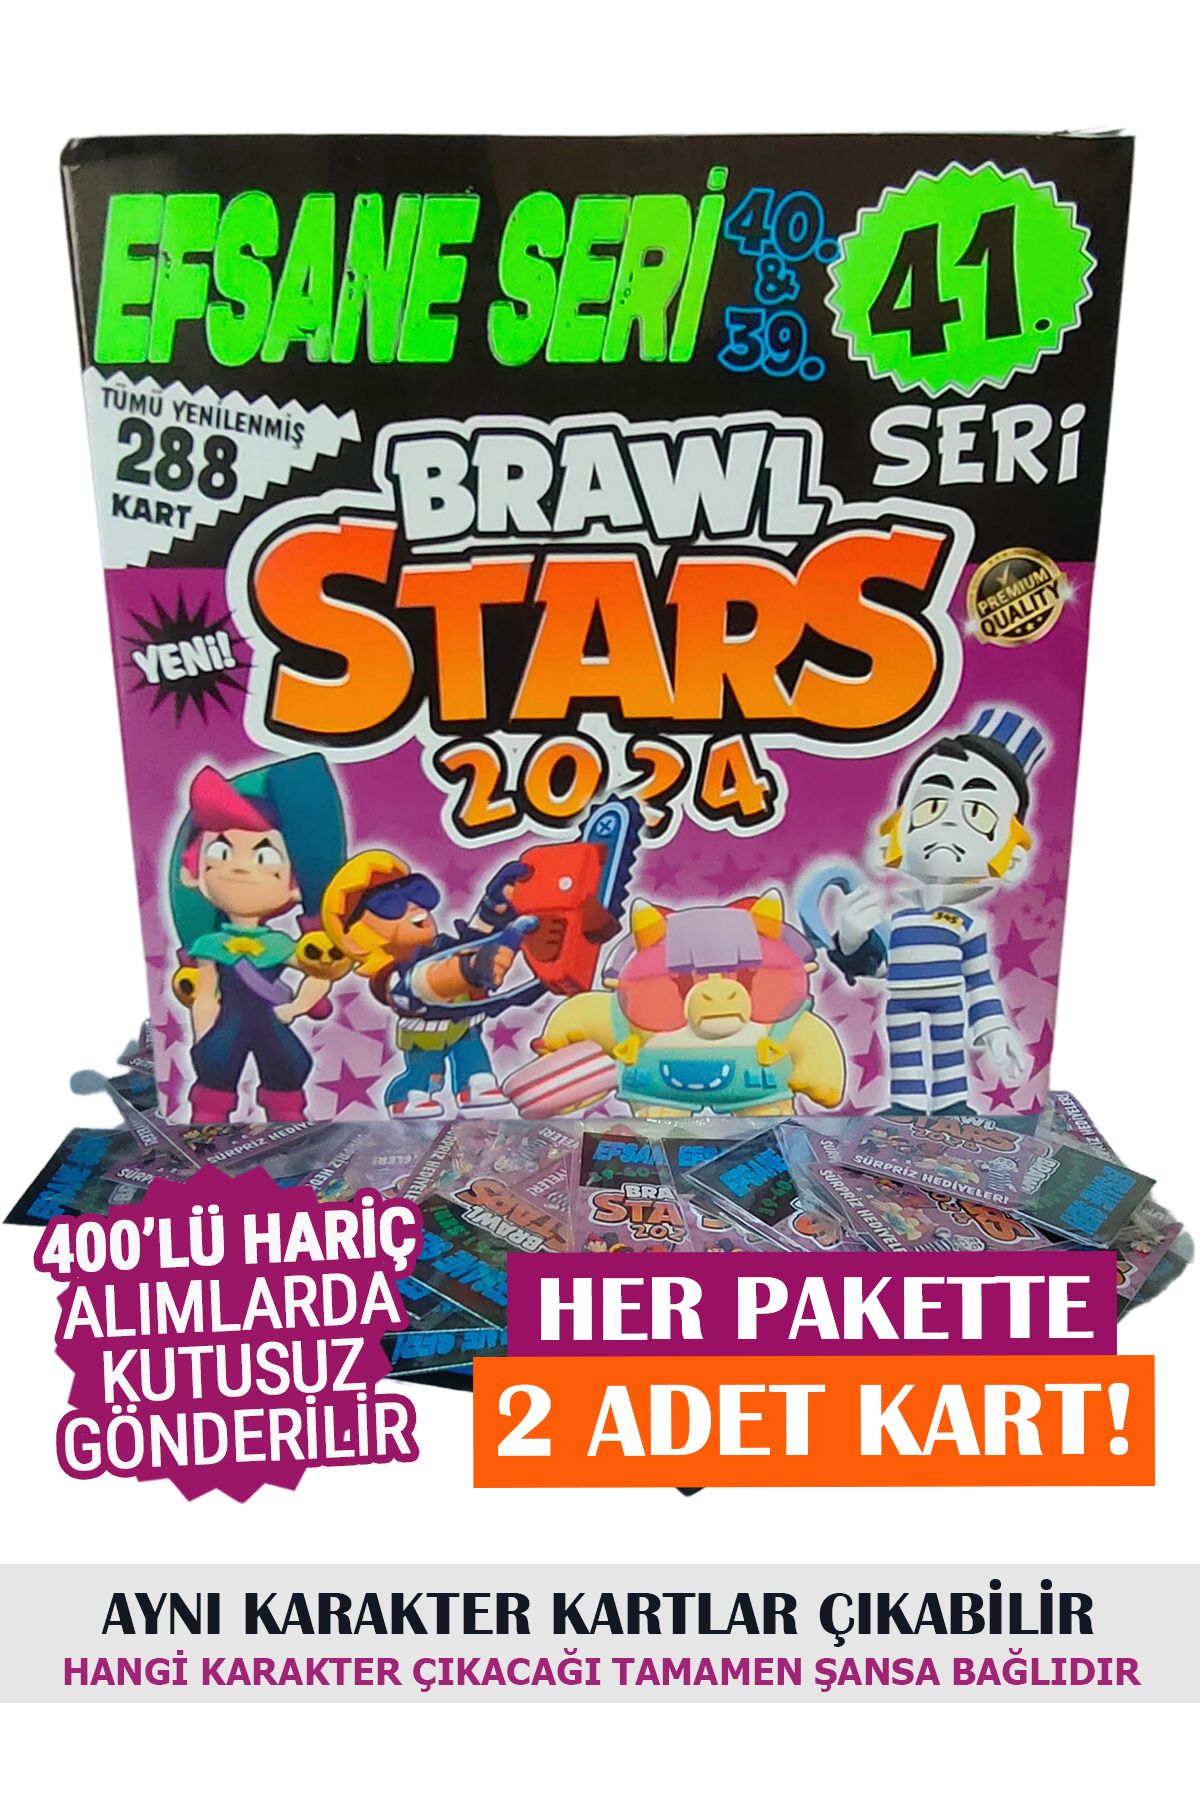 BRAWL STARS Efsane Seri Oyun Kartı 50 Paket 100 Kart 38-39-40. Seri Çocuk Odası